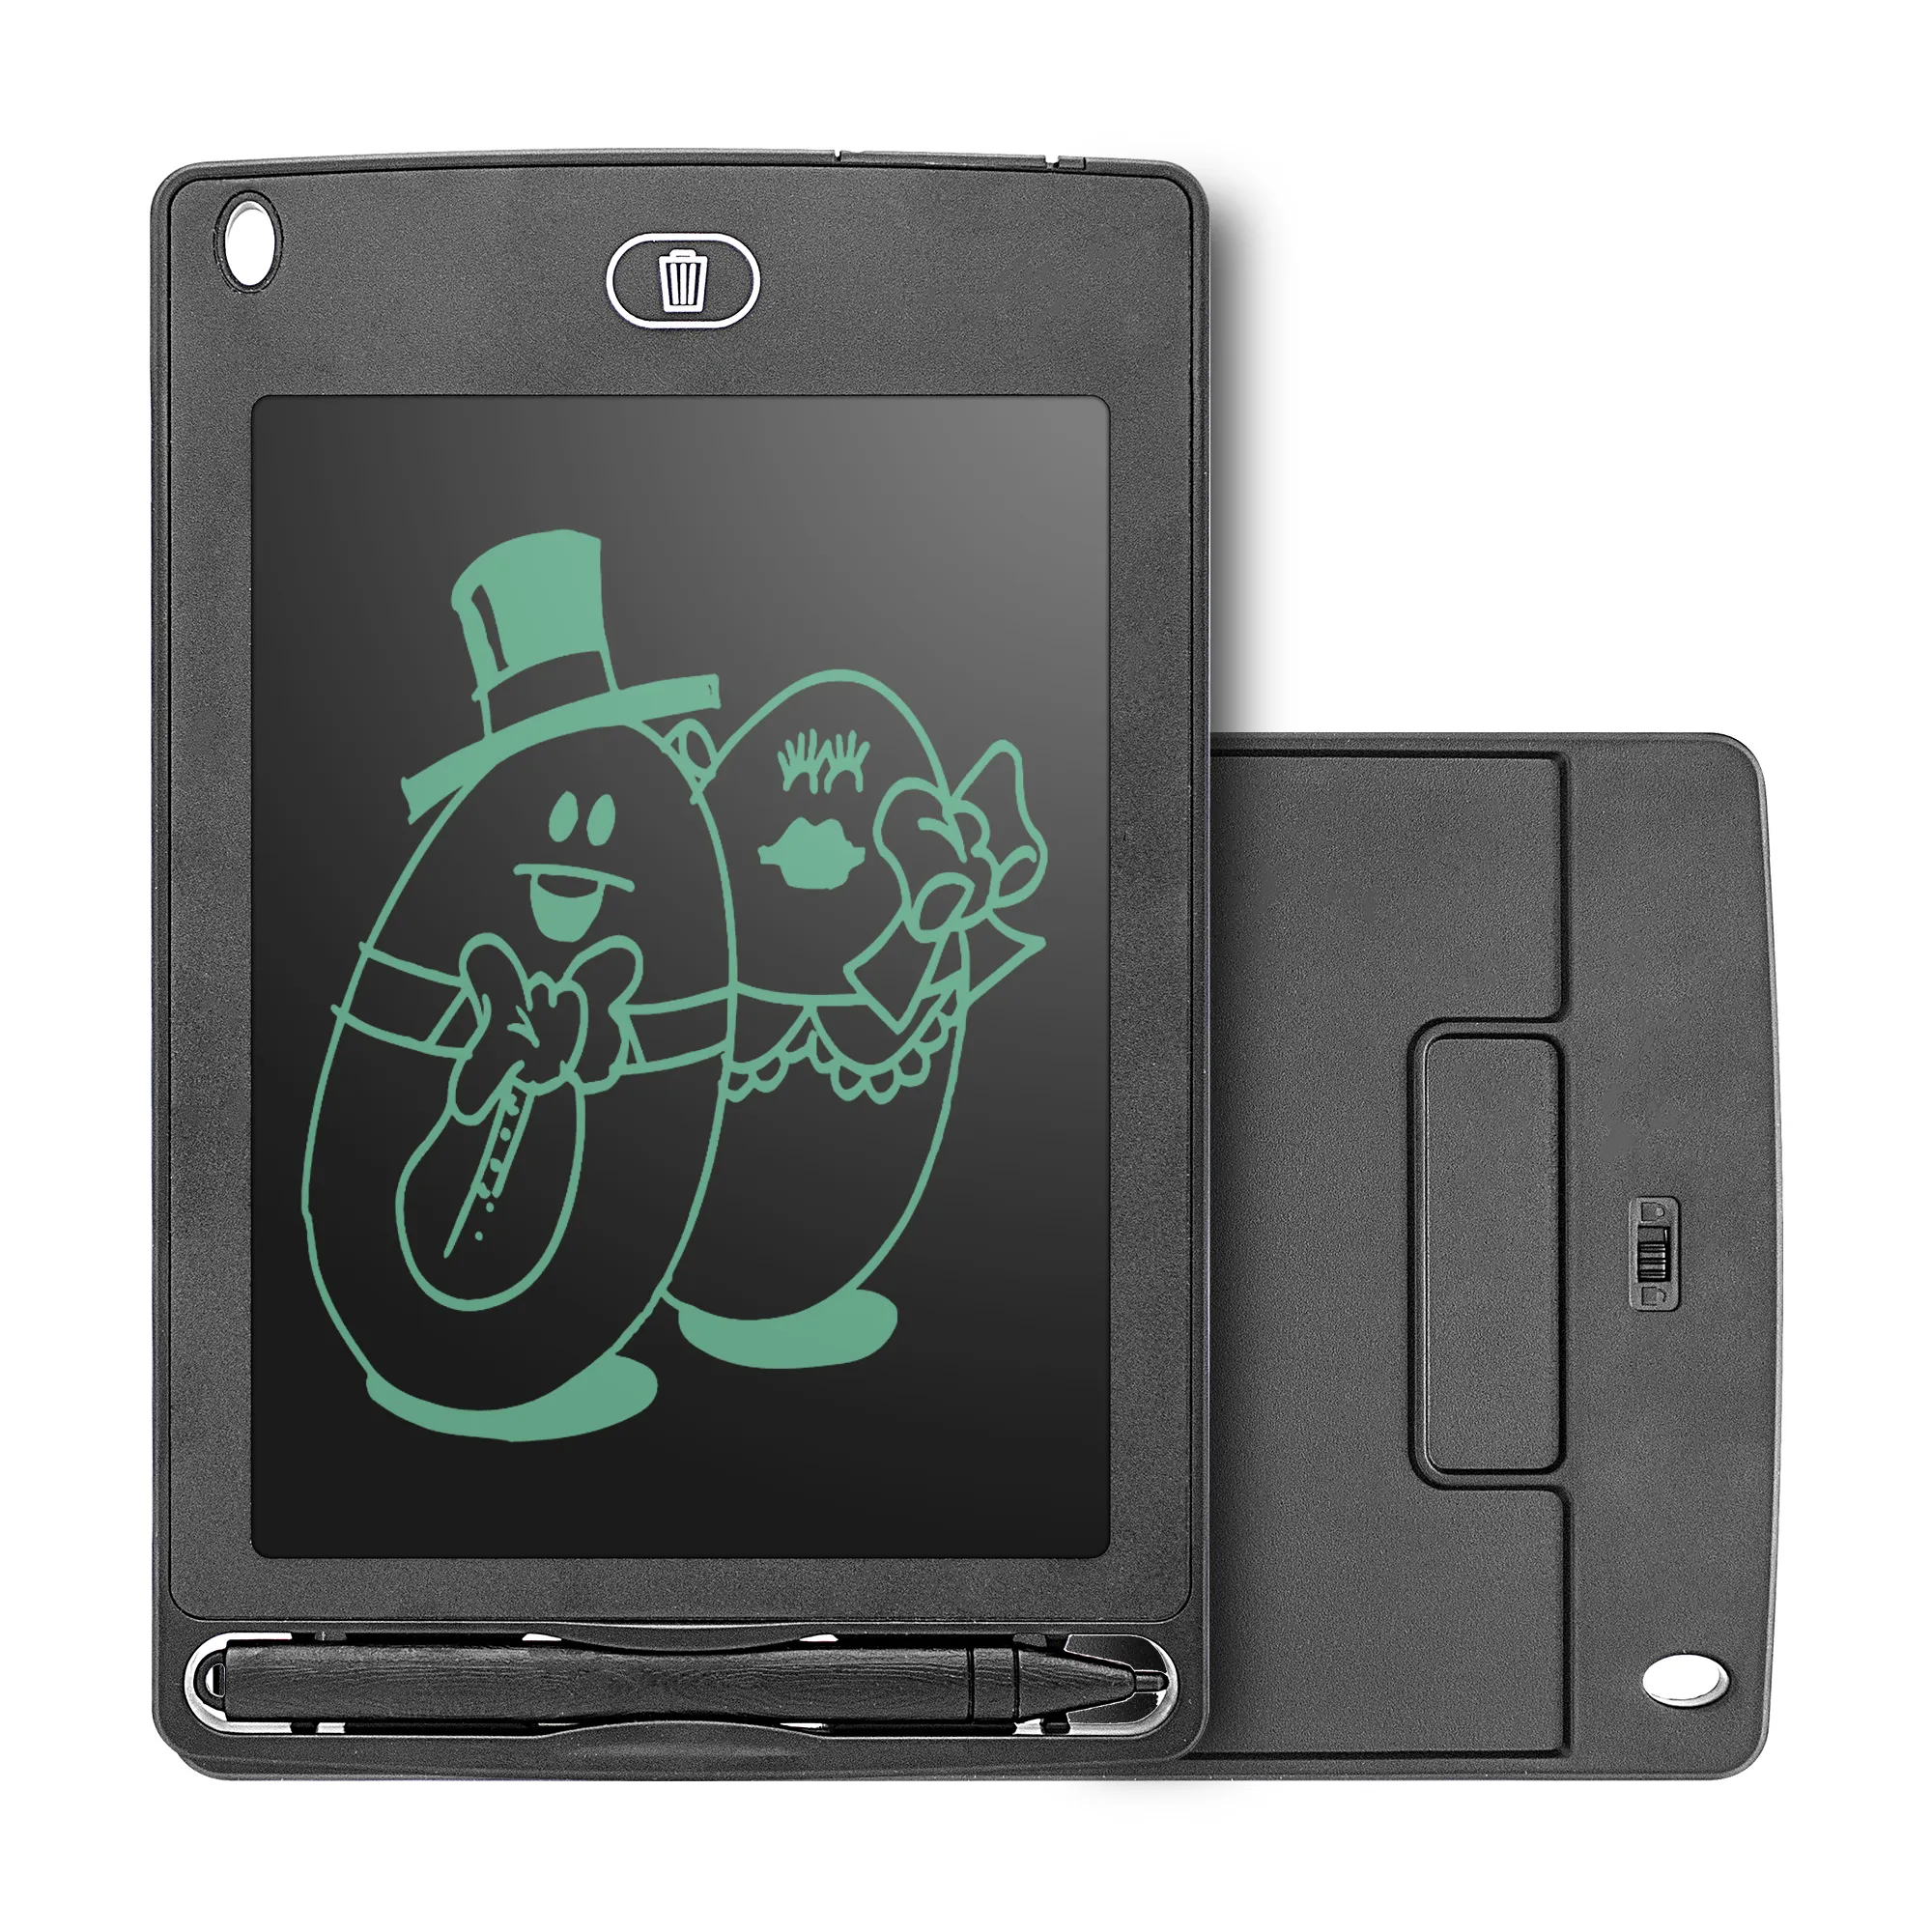 Tableta de escritura lcd de alta calidad para niños, almohadilla electrónica portátil para mensajes, nevera, tablero de dibujo